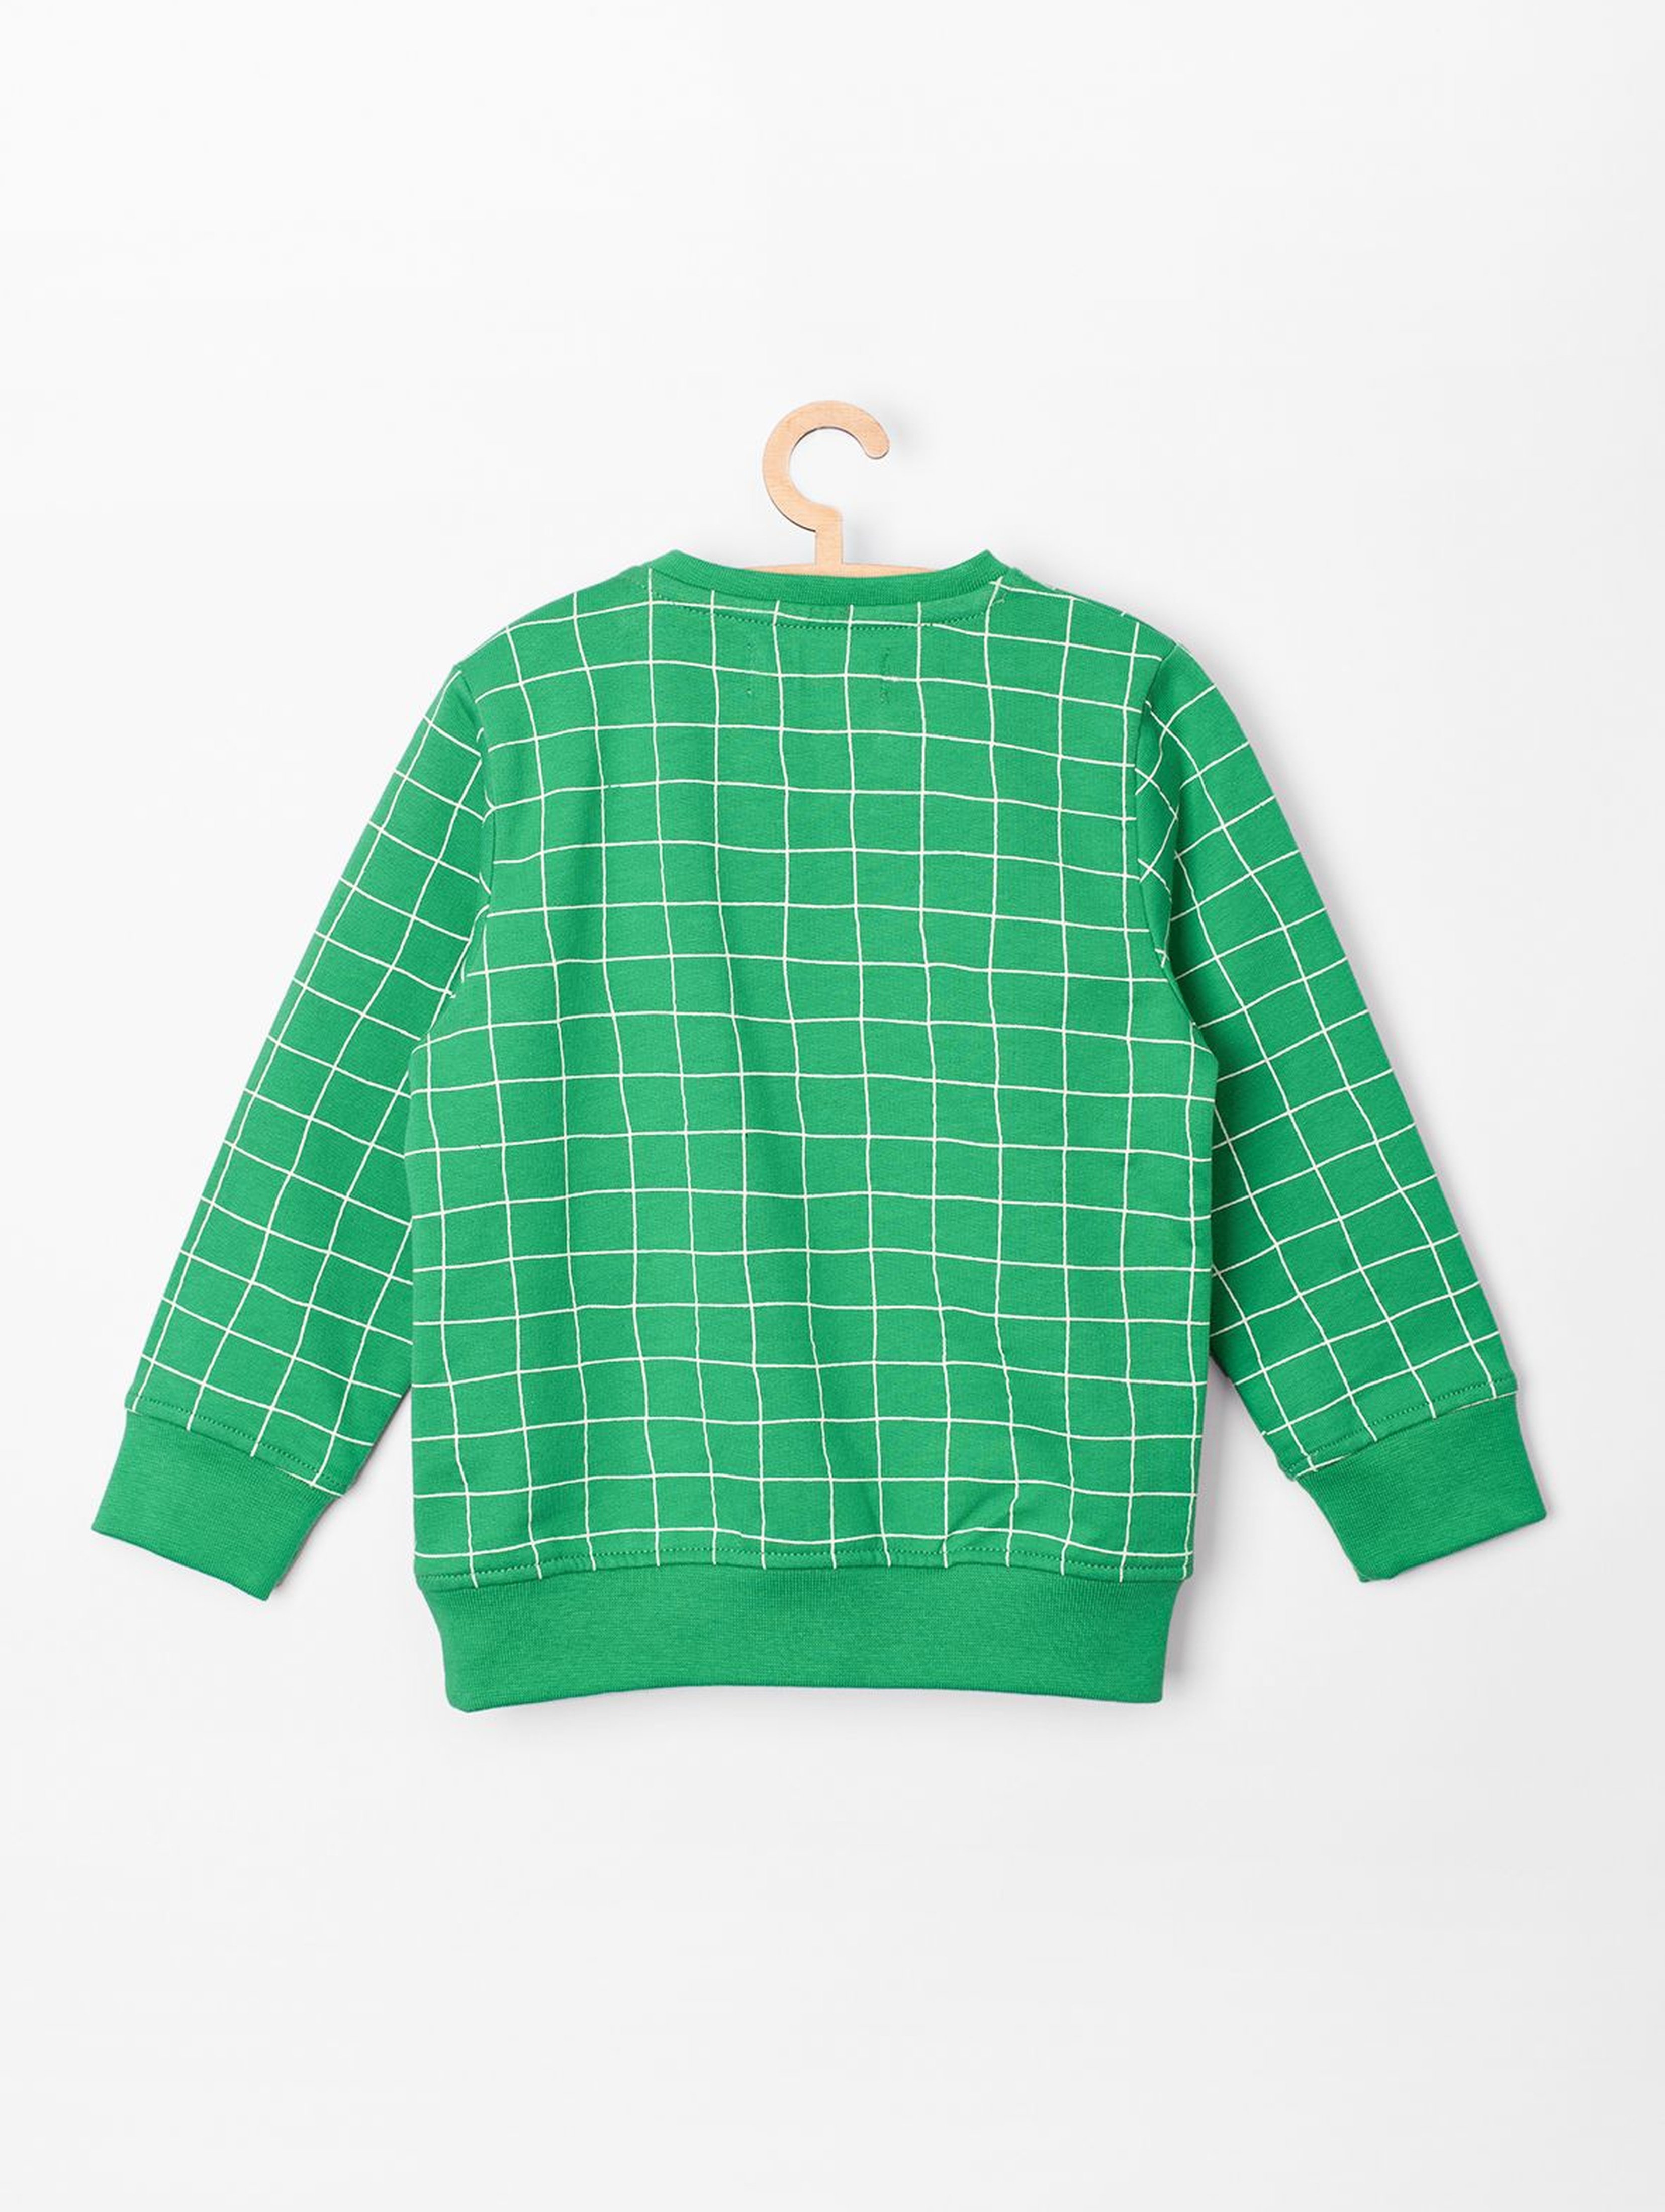 Bluza niemowlęca- zielona we wzór boiska piłkarskiego